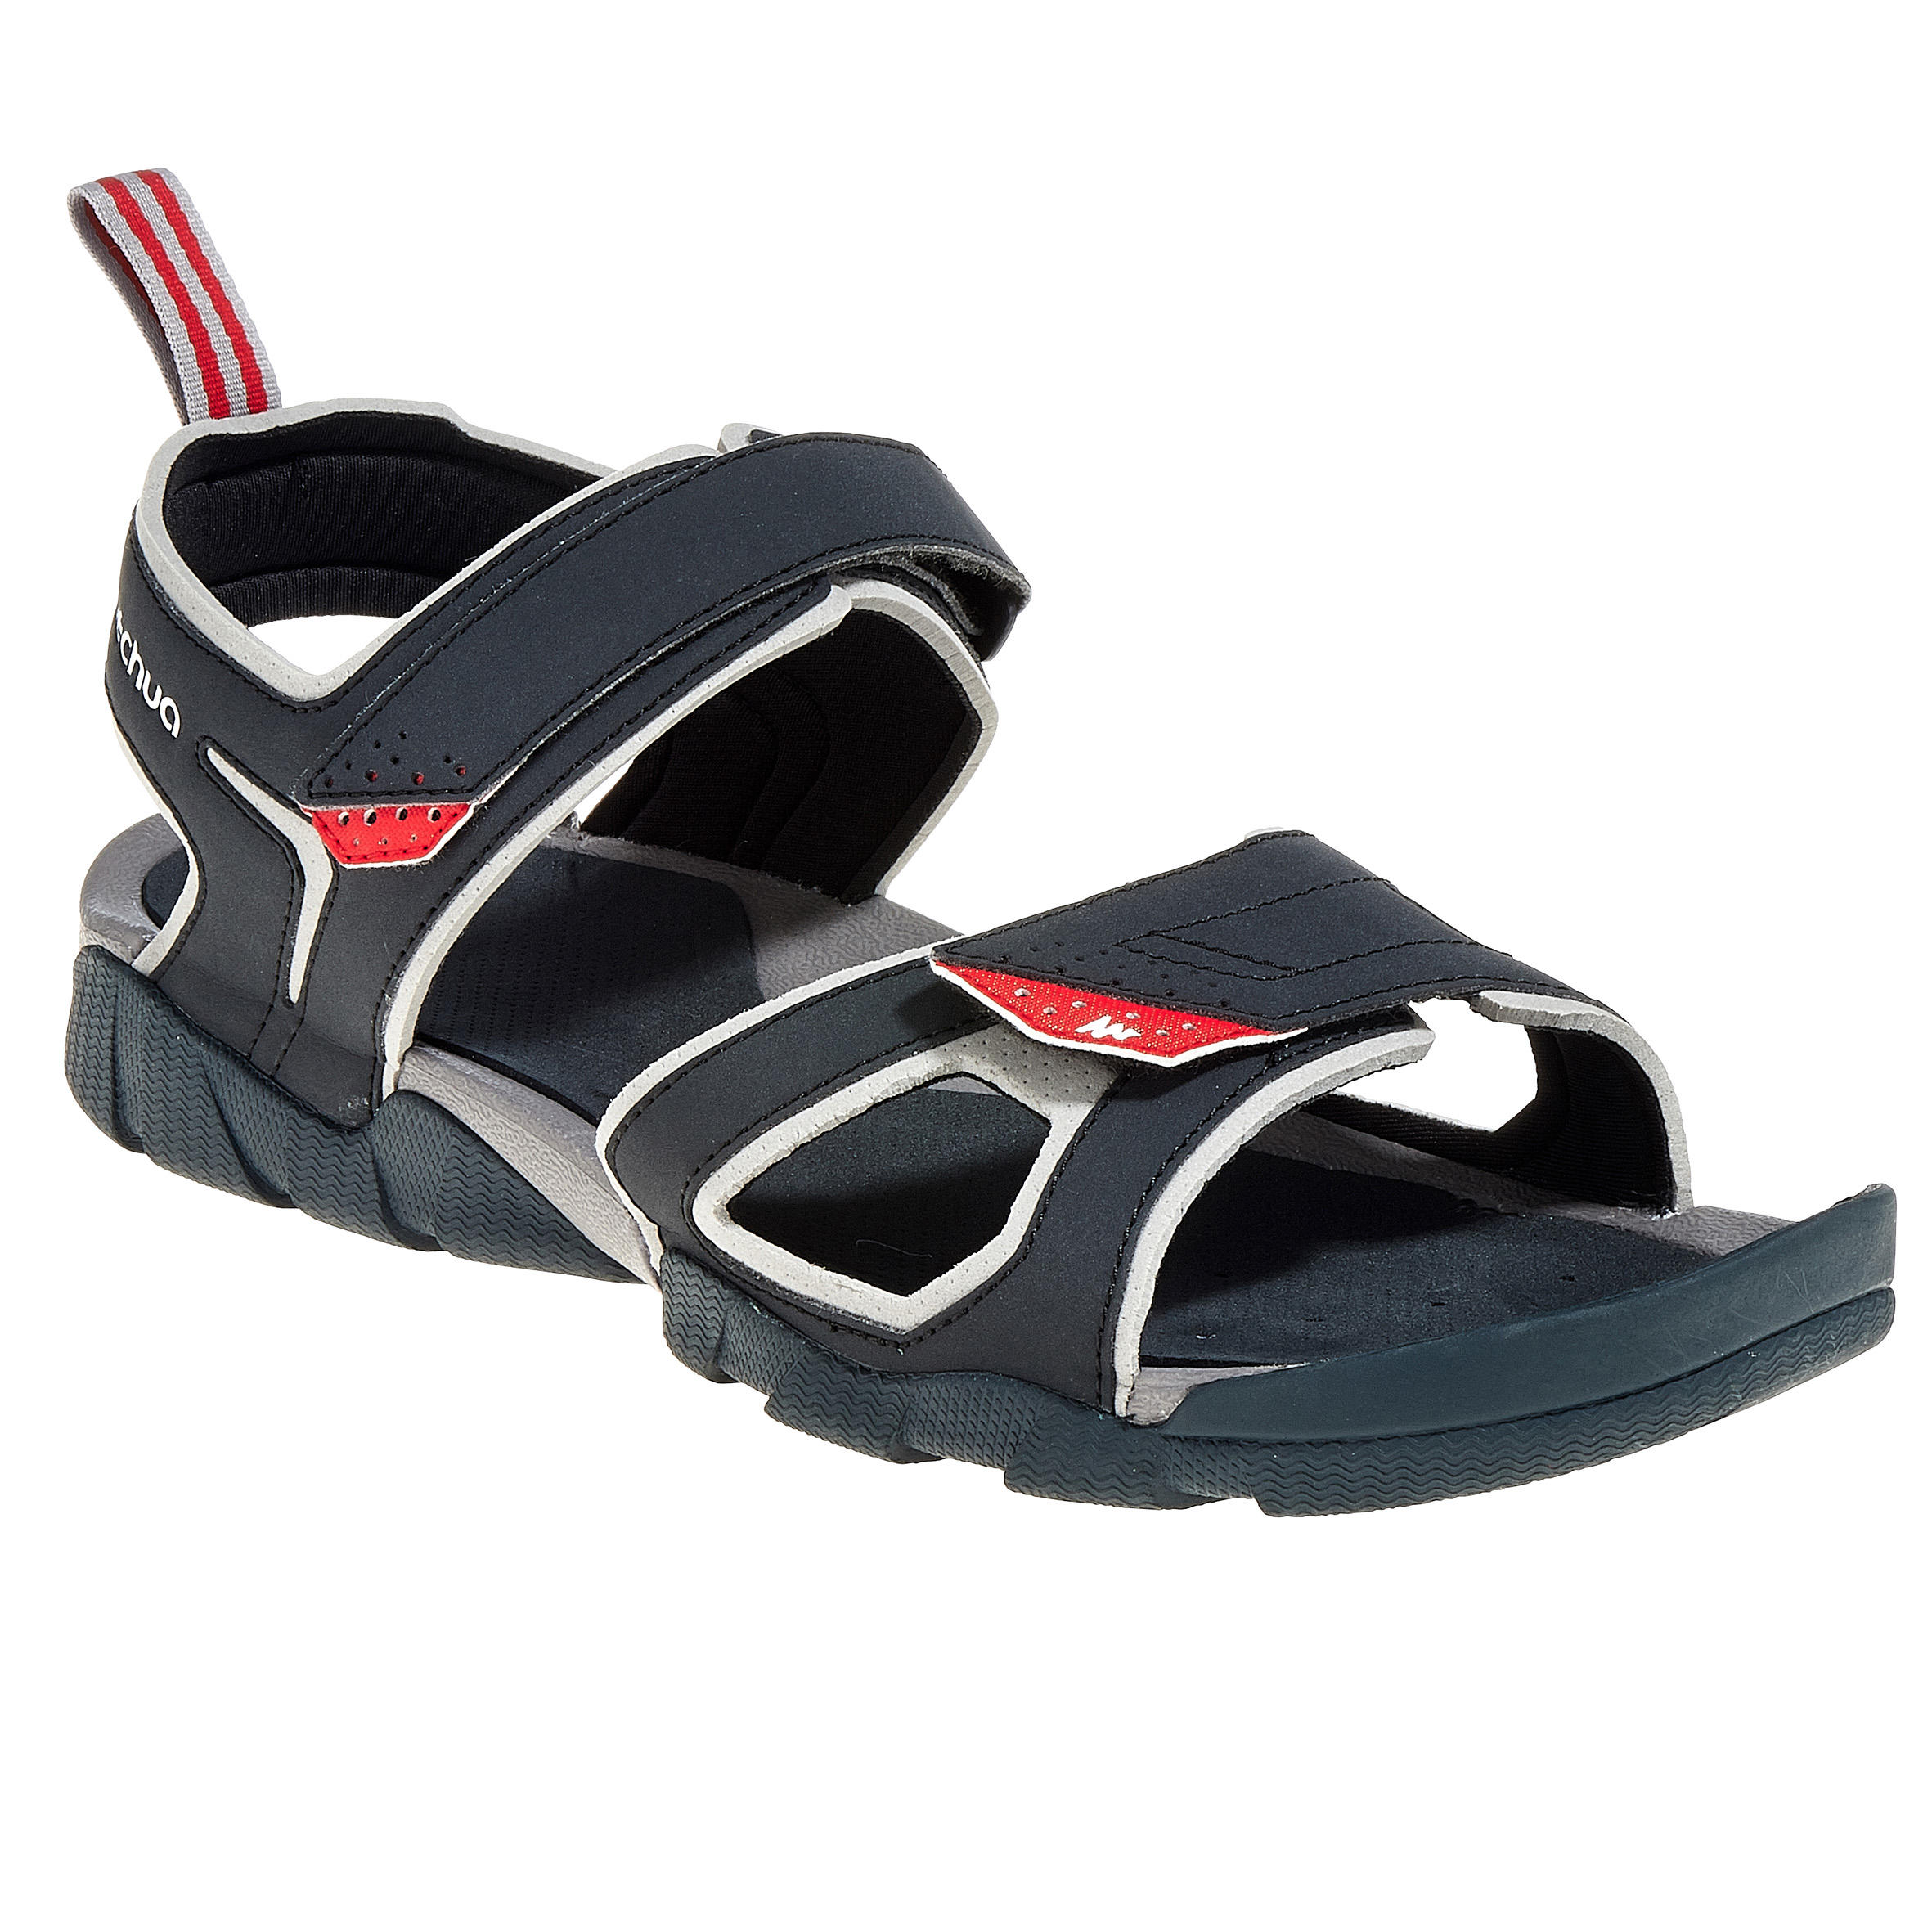 quechua sandals price